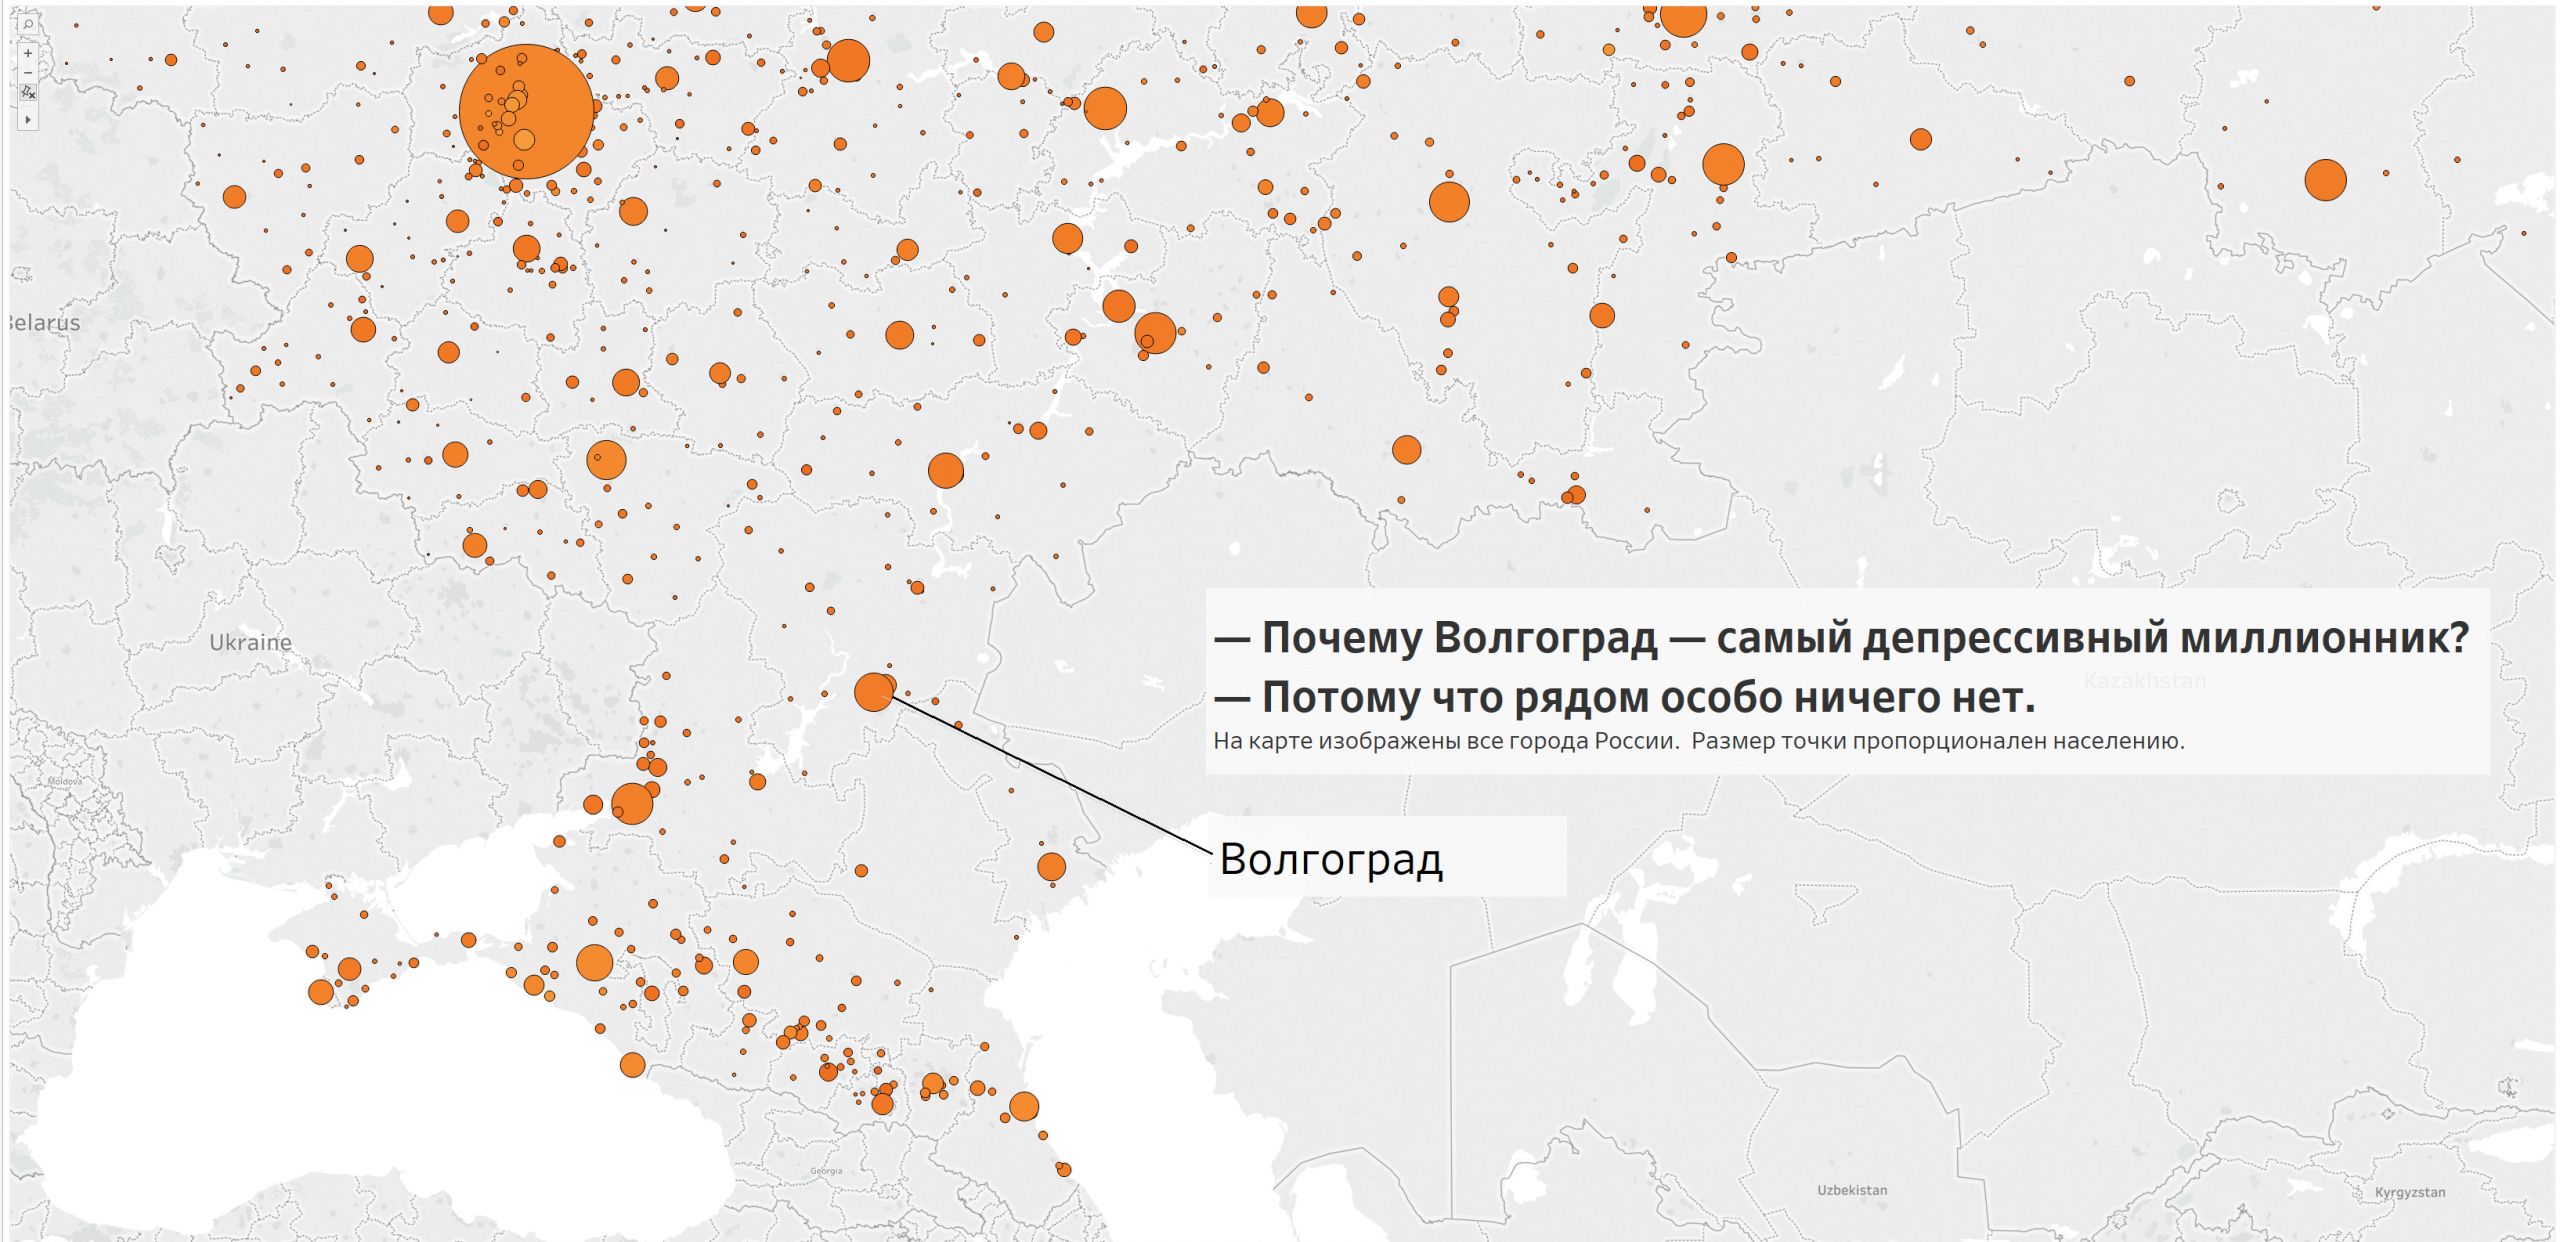  карта городов России